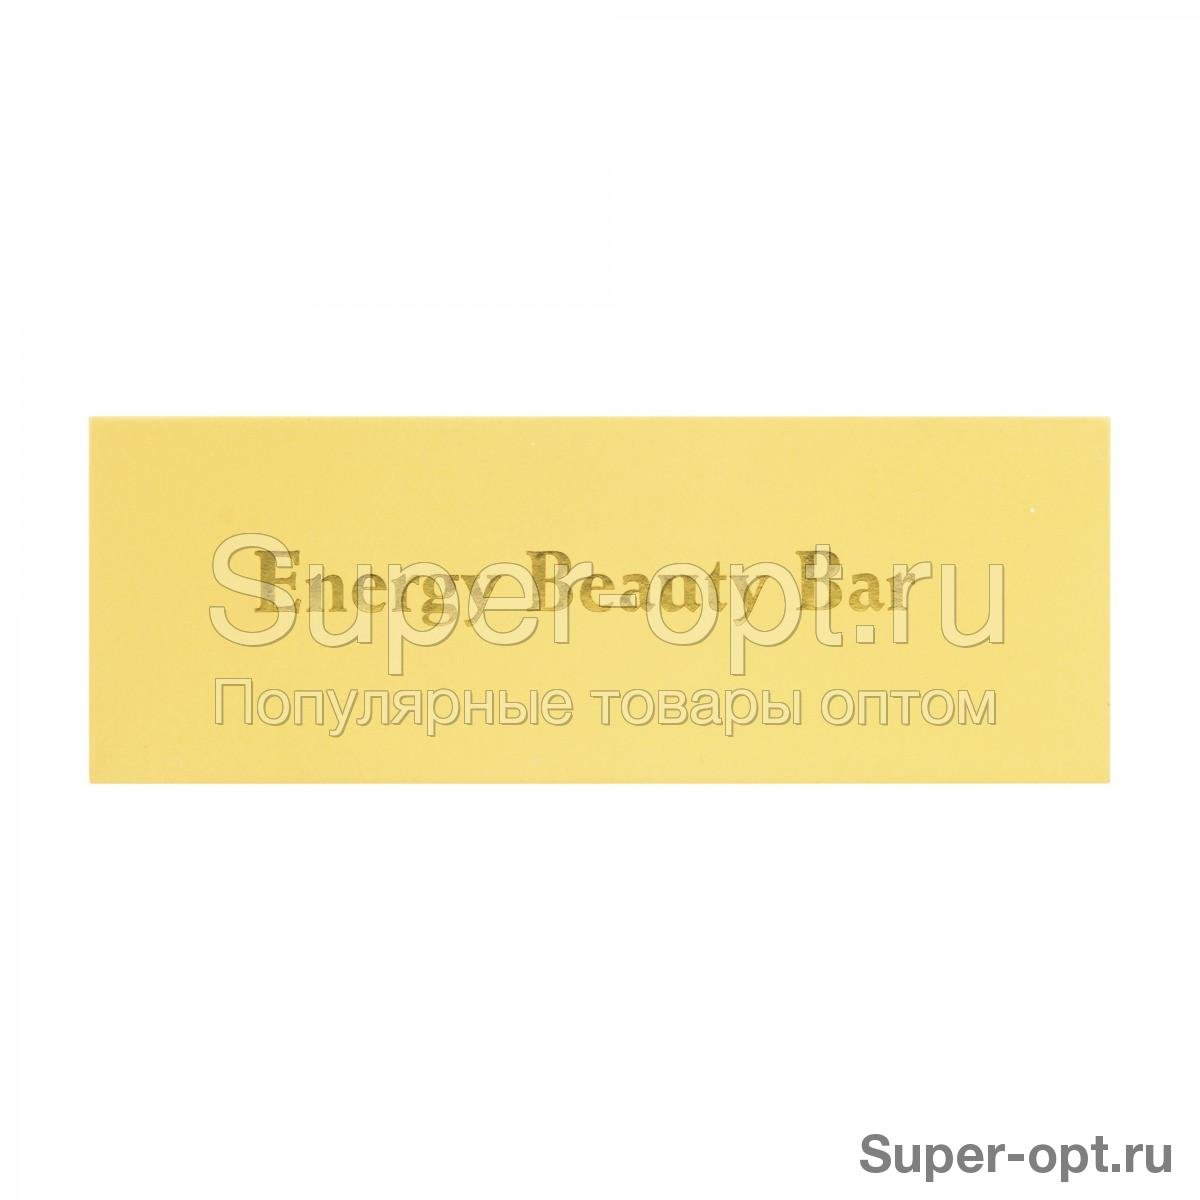 Массажер для лица Energy Beauty Bar